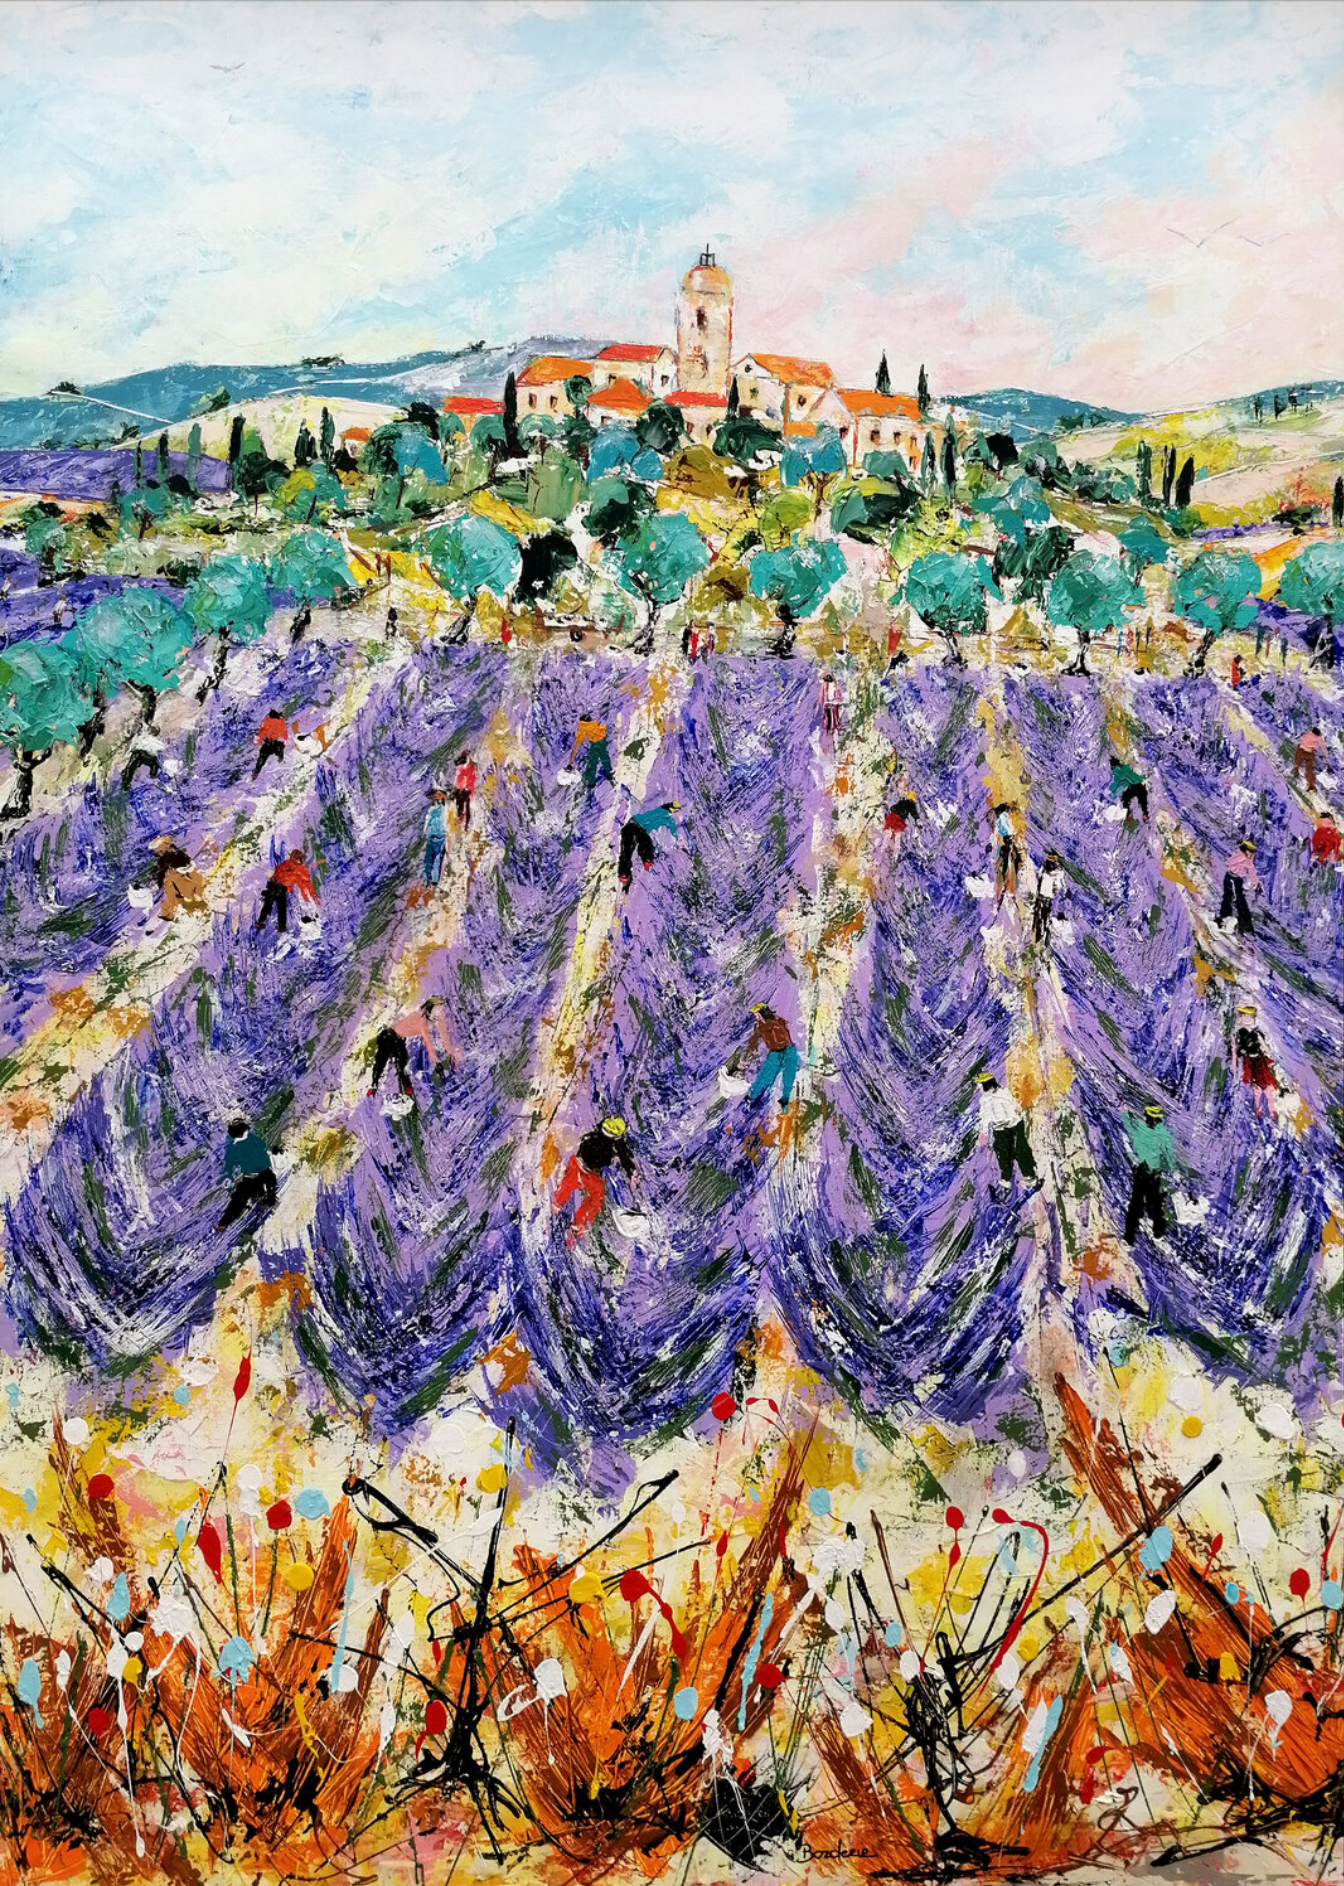 Jean-Pierre Borderies Bild "Champs de lavande" ist ein farbenfrohes figuratives Landschaftsgemälde. 